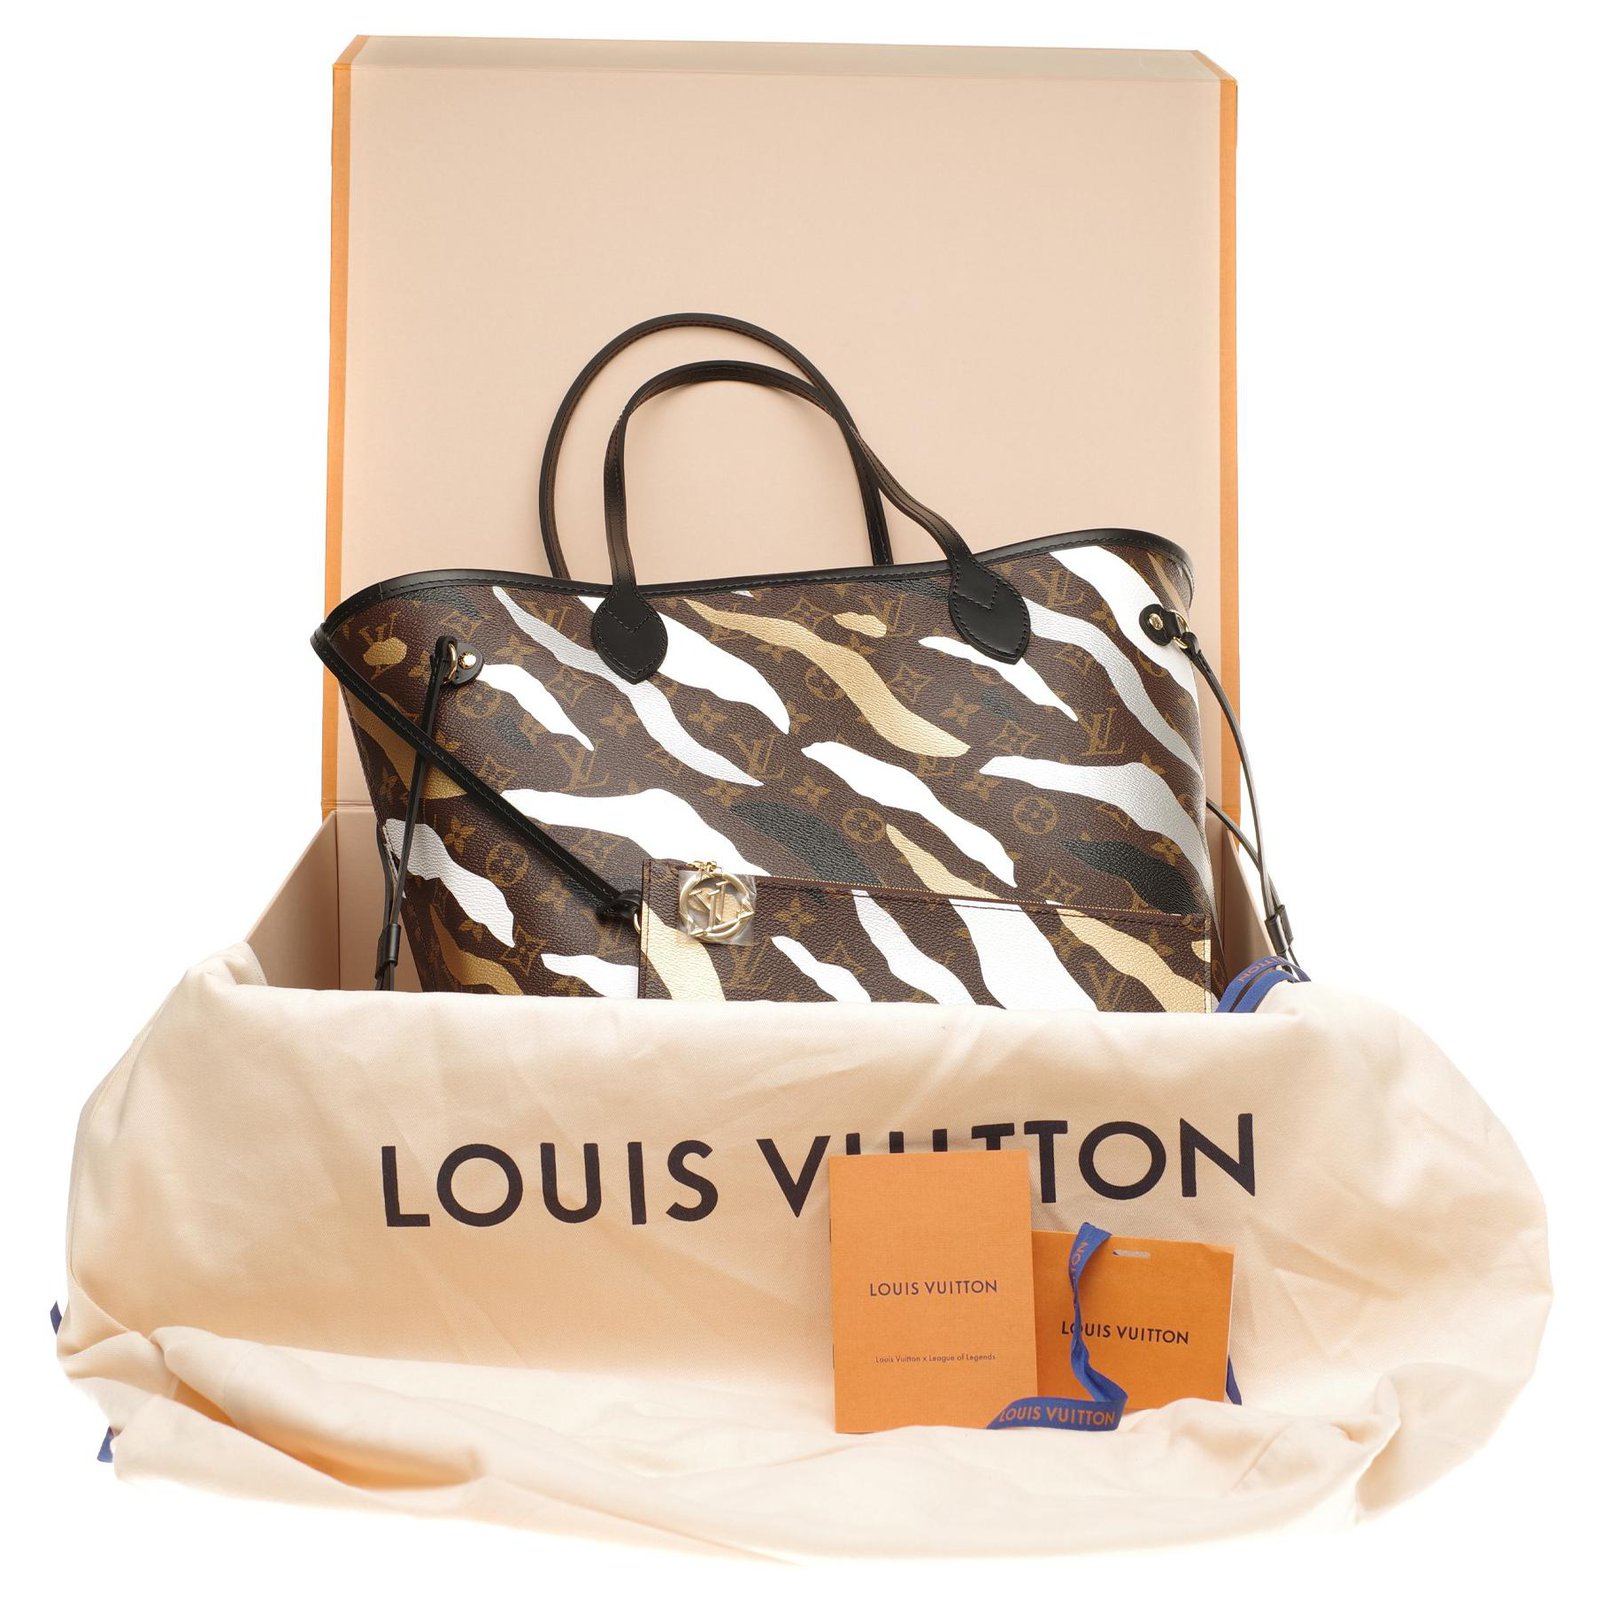 Sacs à main Louis Vuitton Louis Vuitton Neverfull MM série limitée League of legends (LOL), full ...